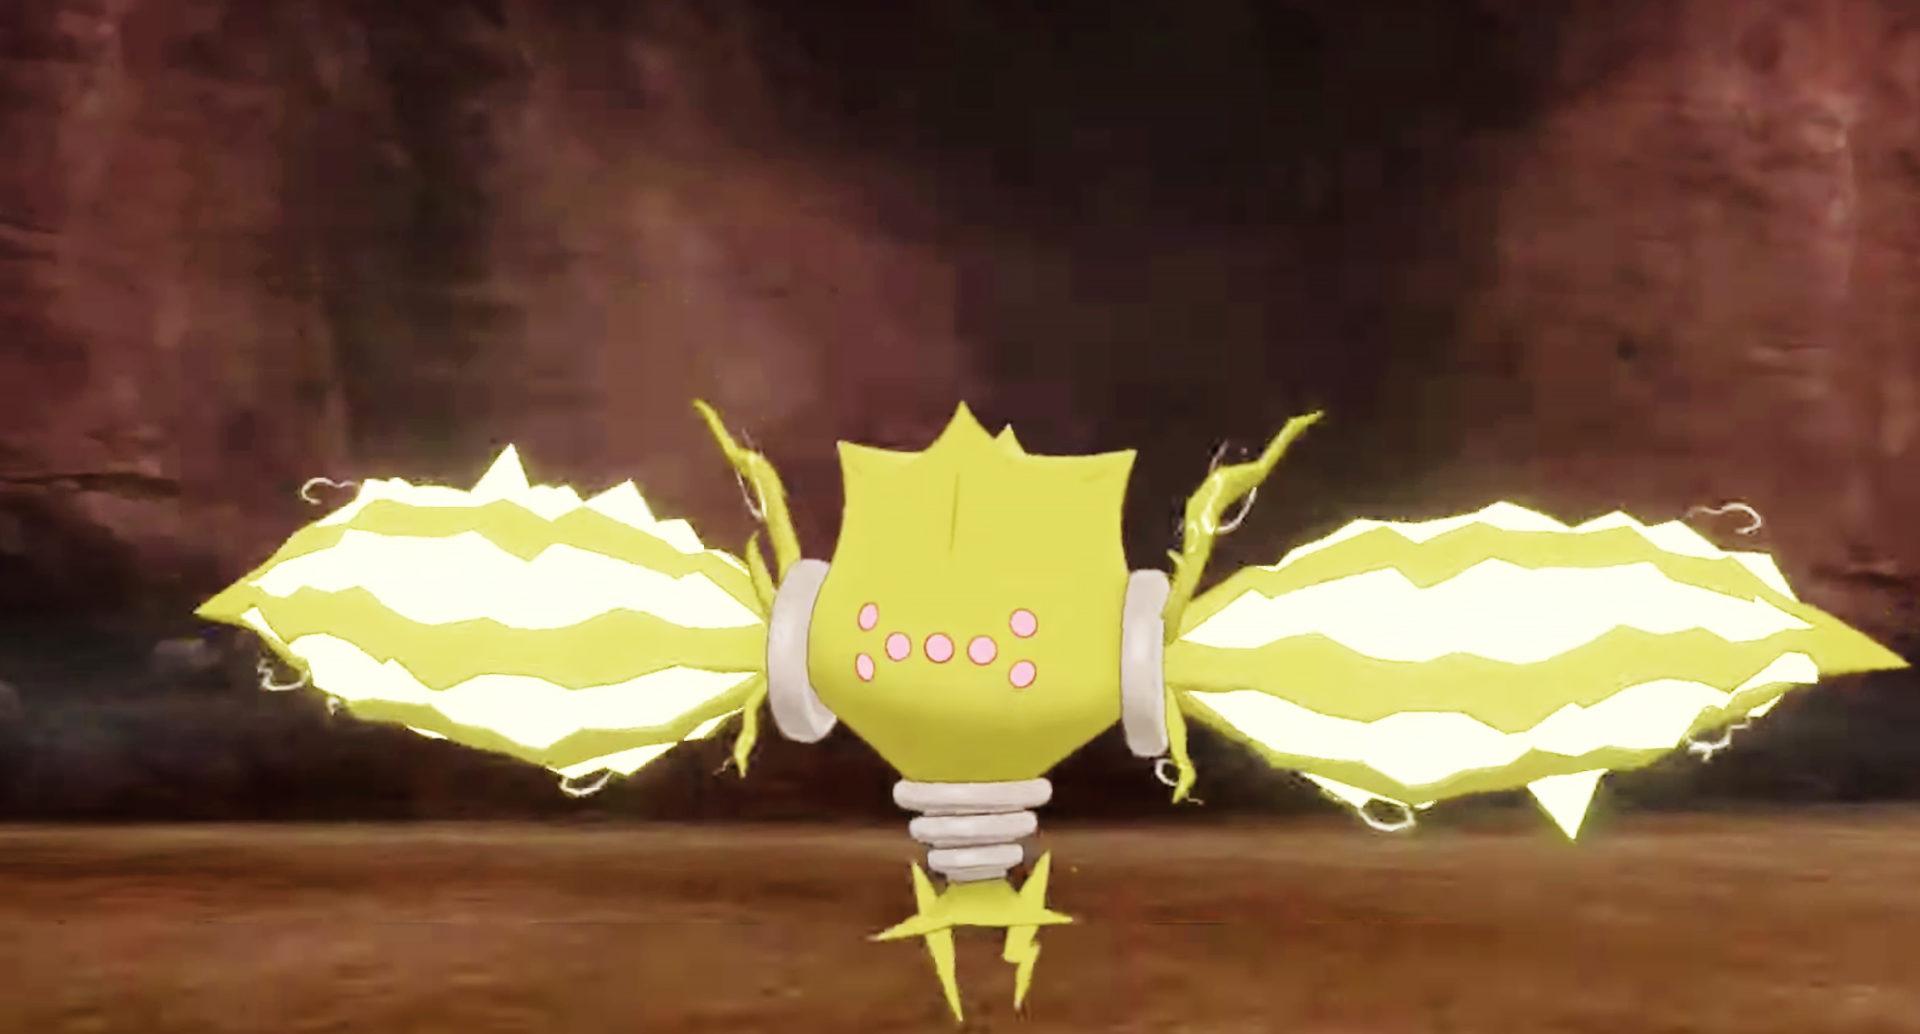 Pokemon Sword Shield Shiny Starters Speculation by jozzer26 on